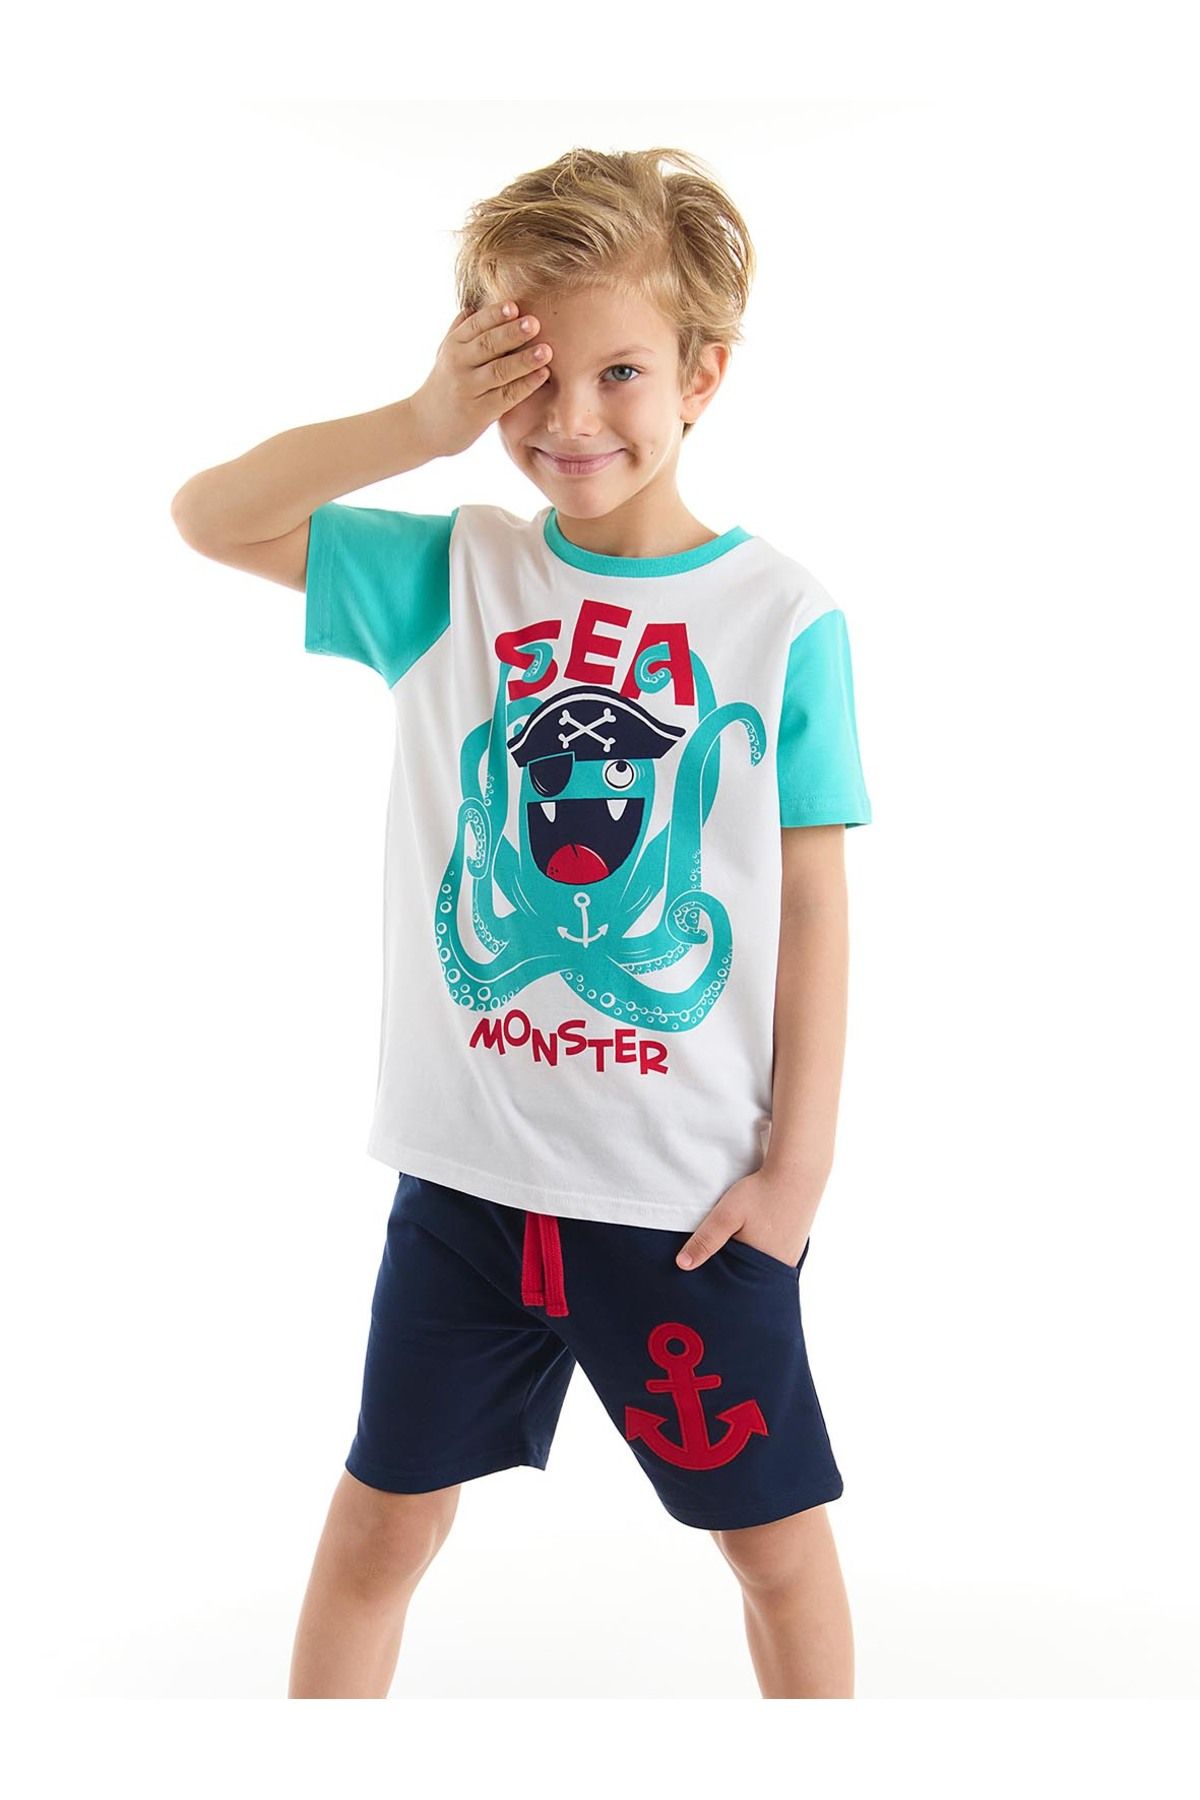 Denokids Deniz Canavarı Erkek Çocuk T-shirt Şort Takım